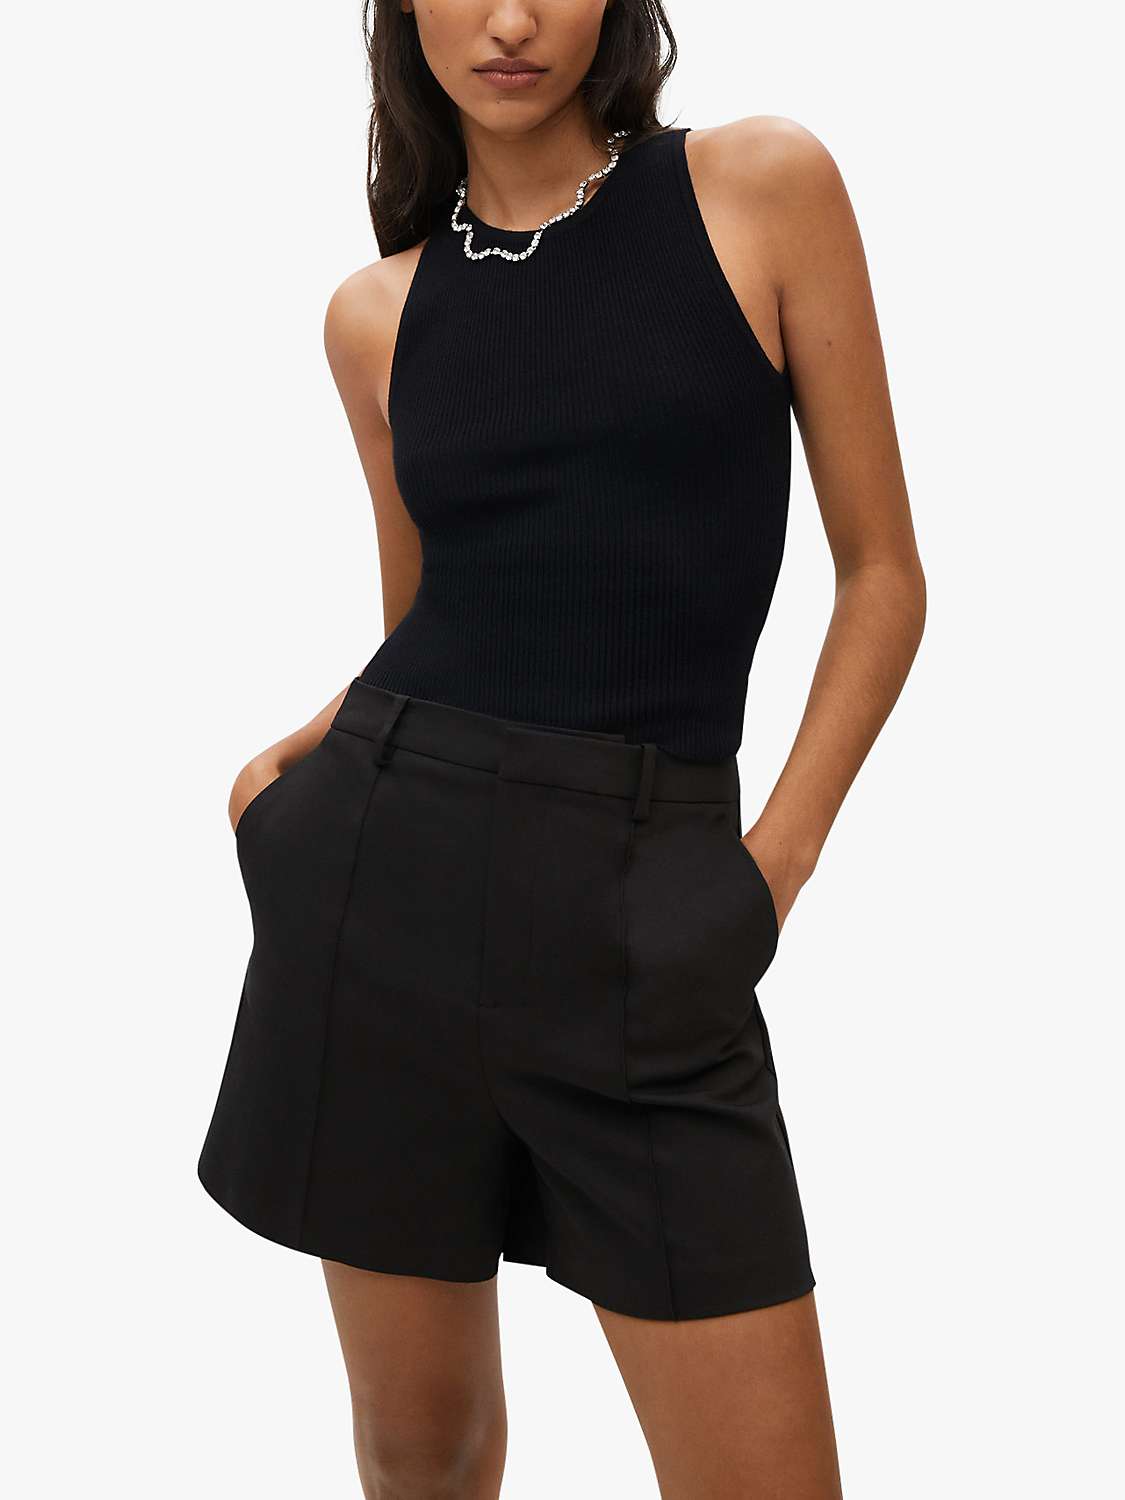 Black S discount 72% Mango bodysuit WOMEN FASHION Shirts & T-shirts Bodysuit Asymmetric 